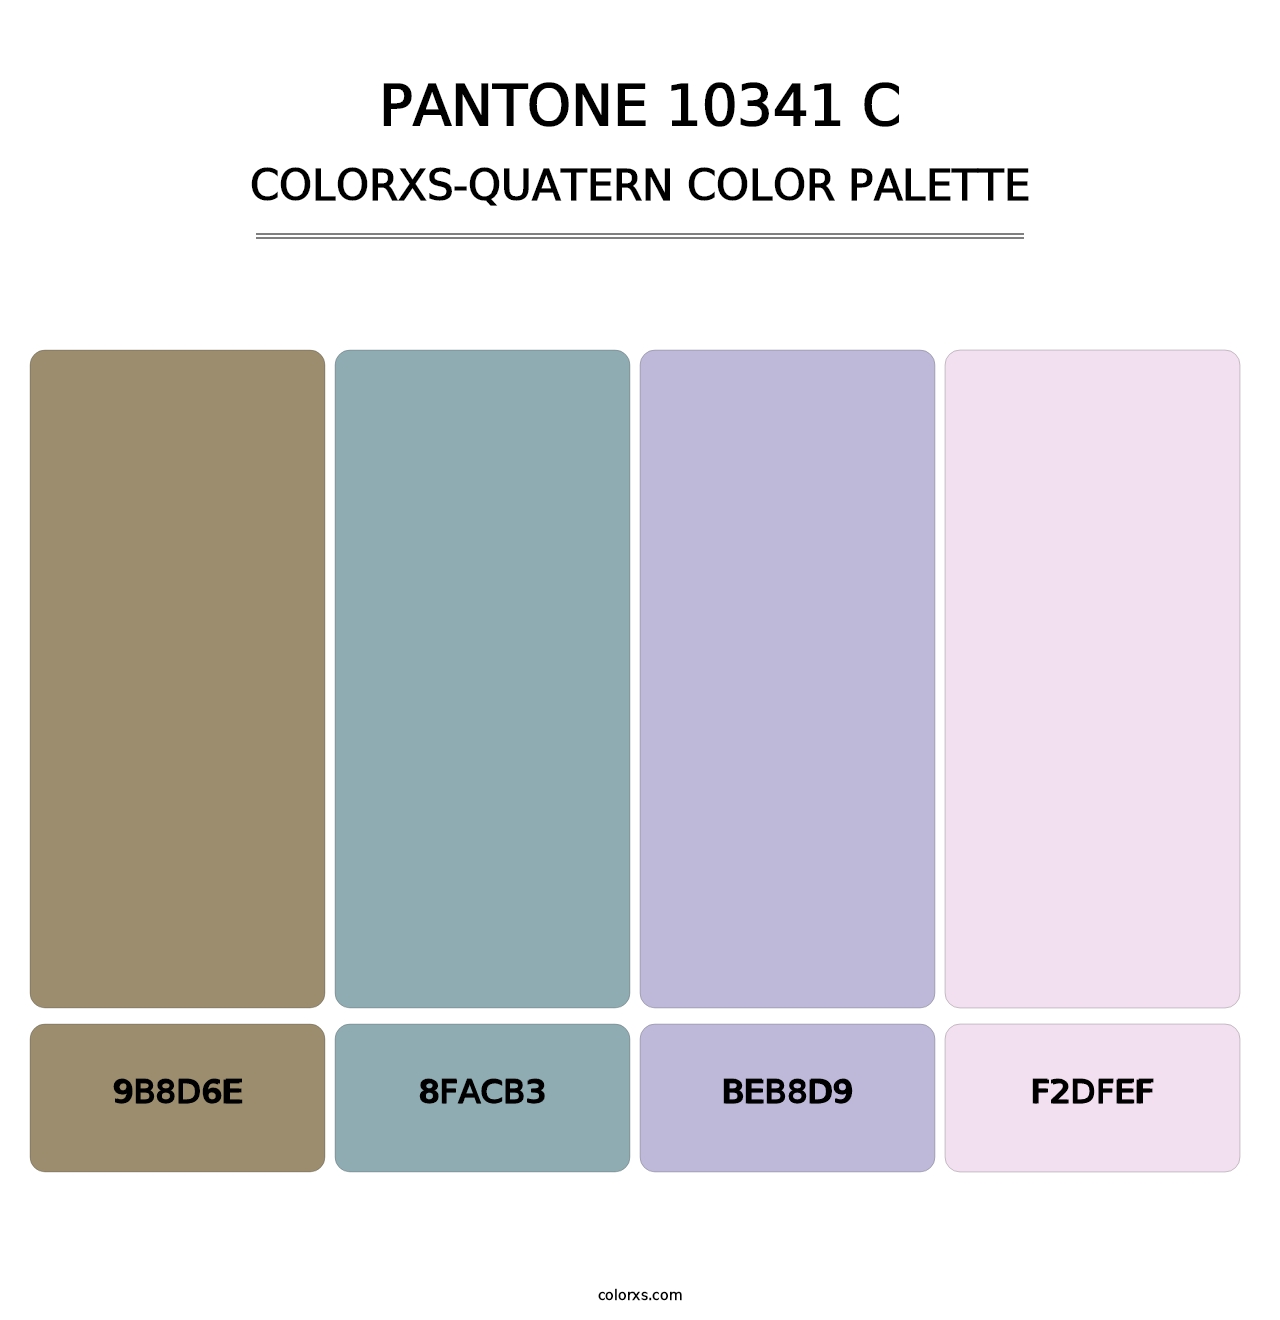 PANTONE 10341 C - Colorxs Quatern Palette